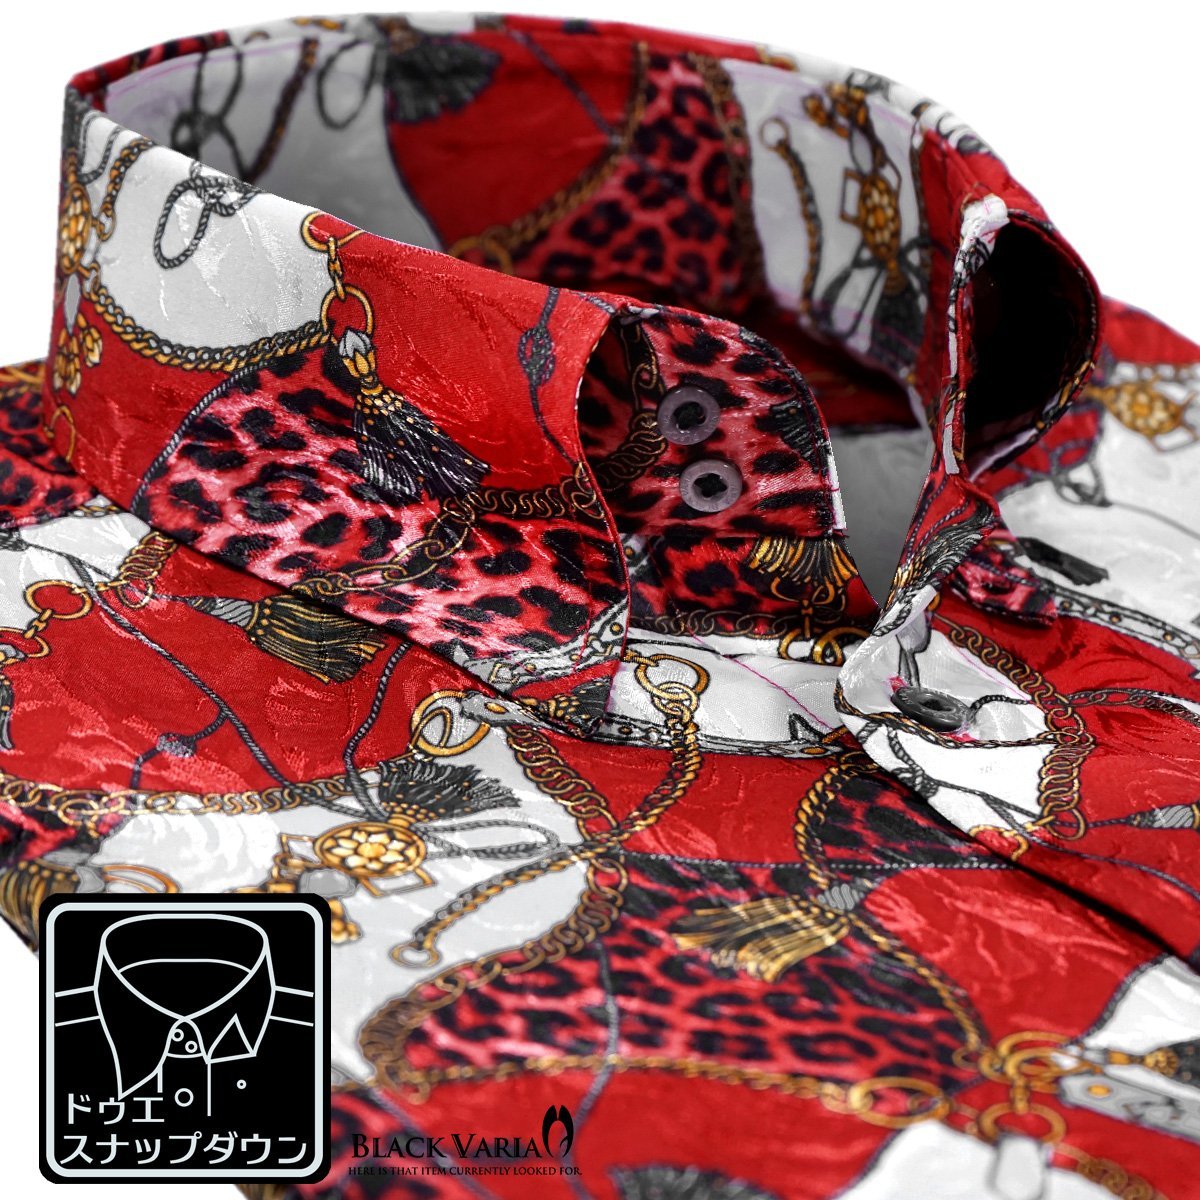 181718-re BLACK VARIA ドゥエボットーニ 豹ヒョウ×鎖スカーフ柄 スナップダウン ジャガードドレスシャツ メンズ(レッド赤) L パーティー_画像1